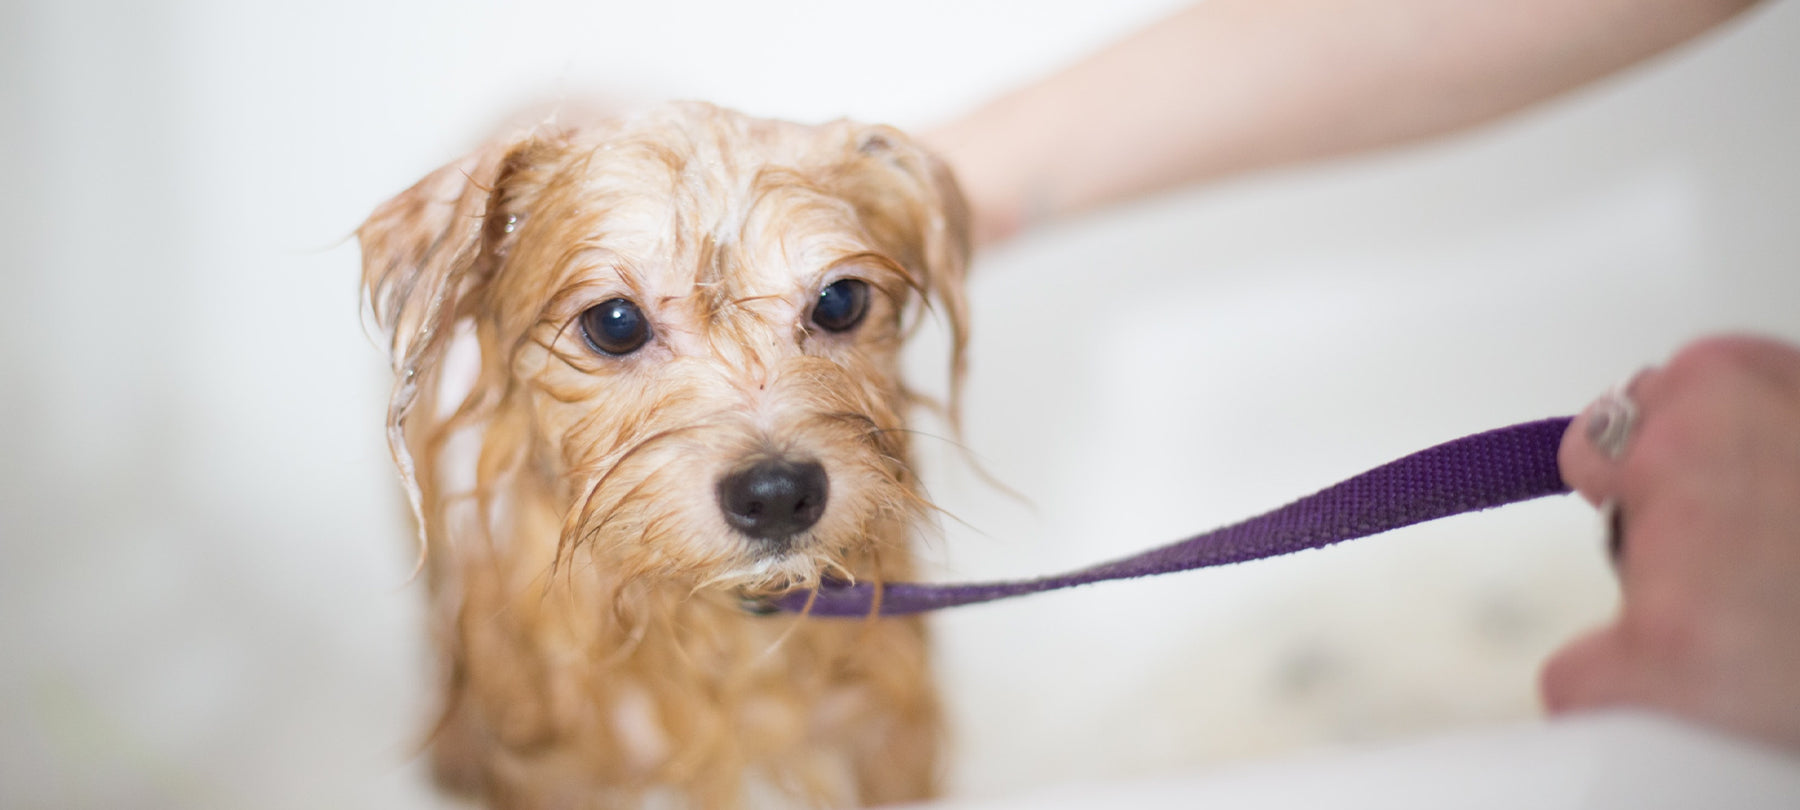 Small dog getting a bath.